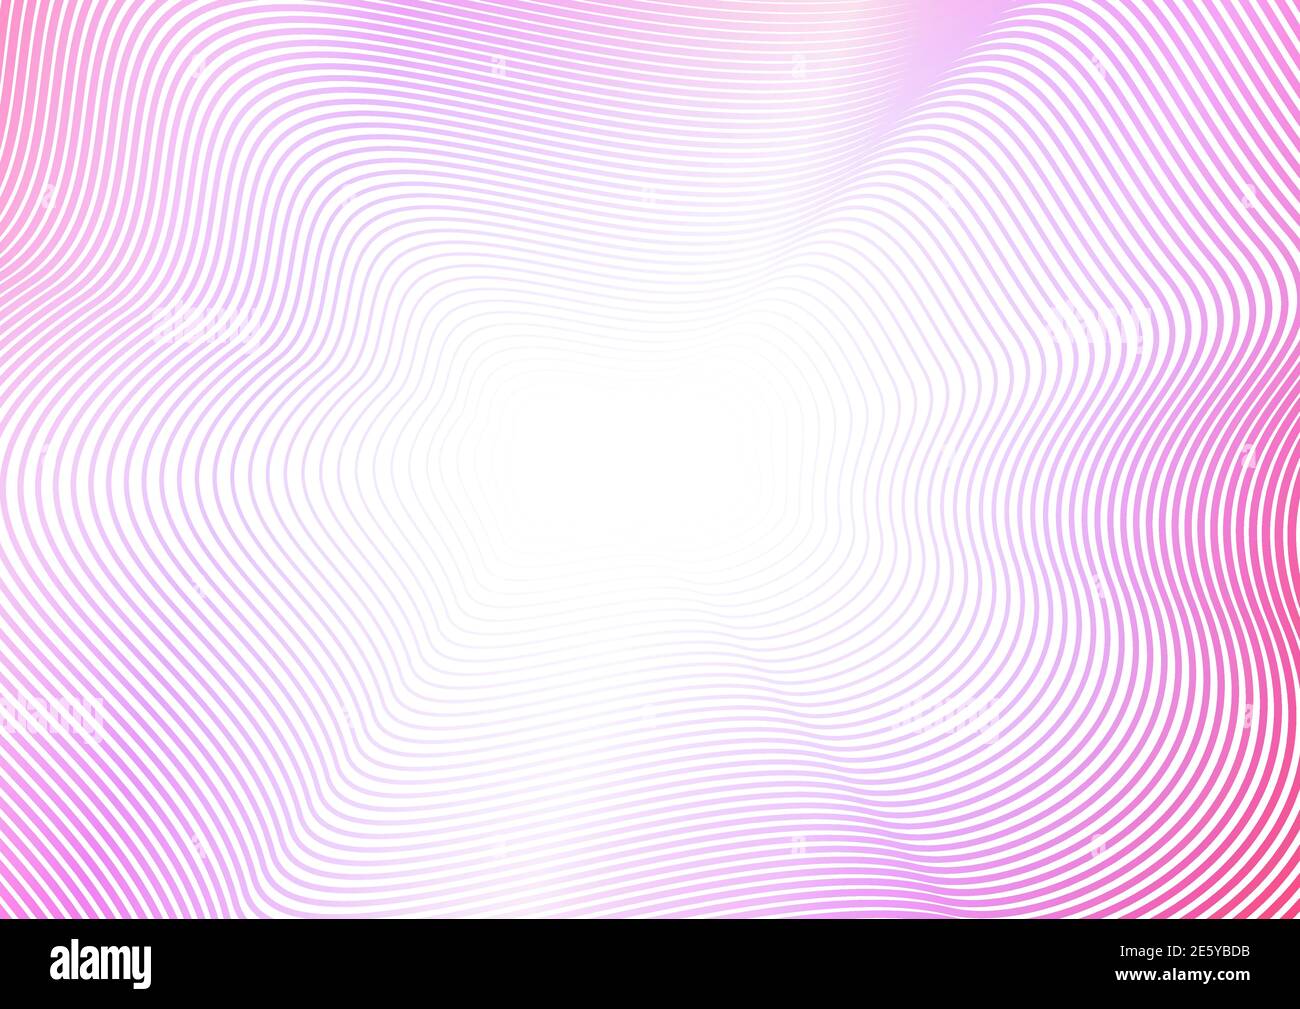 Quetschkurven mit violettem, magentafarbenem und weißem Verlauf. Helle, farbenfrohe Wellen. Abstrakter Hintergrund. Vektorlinie Art Muster, Blitz. Rahmen, Rahmendesign Stock Vektor